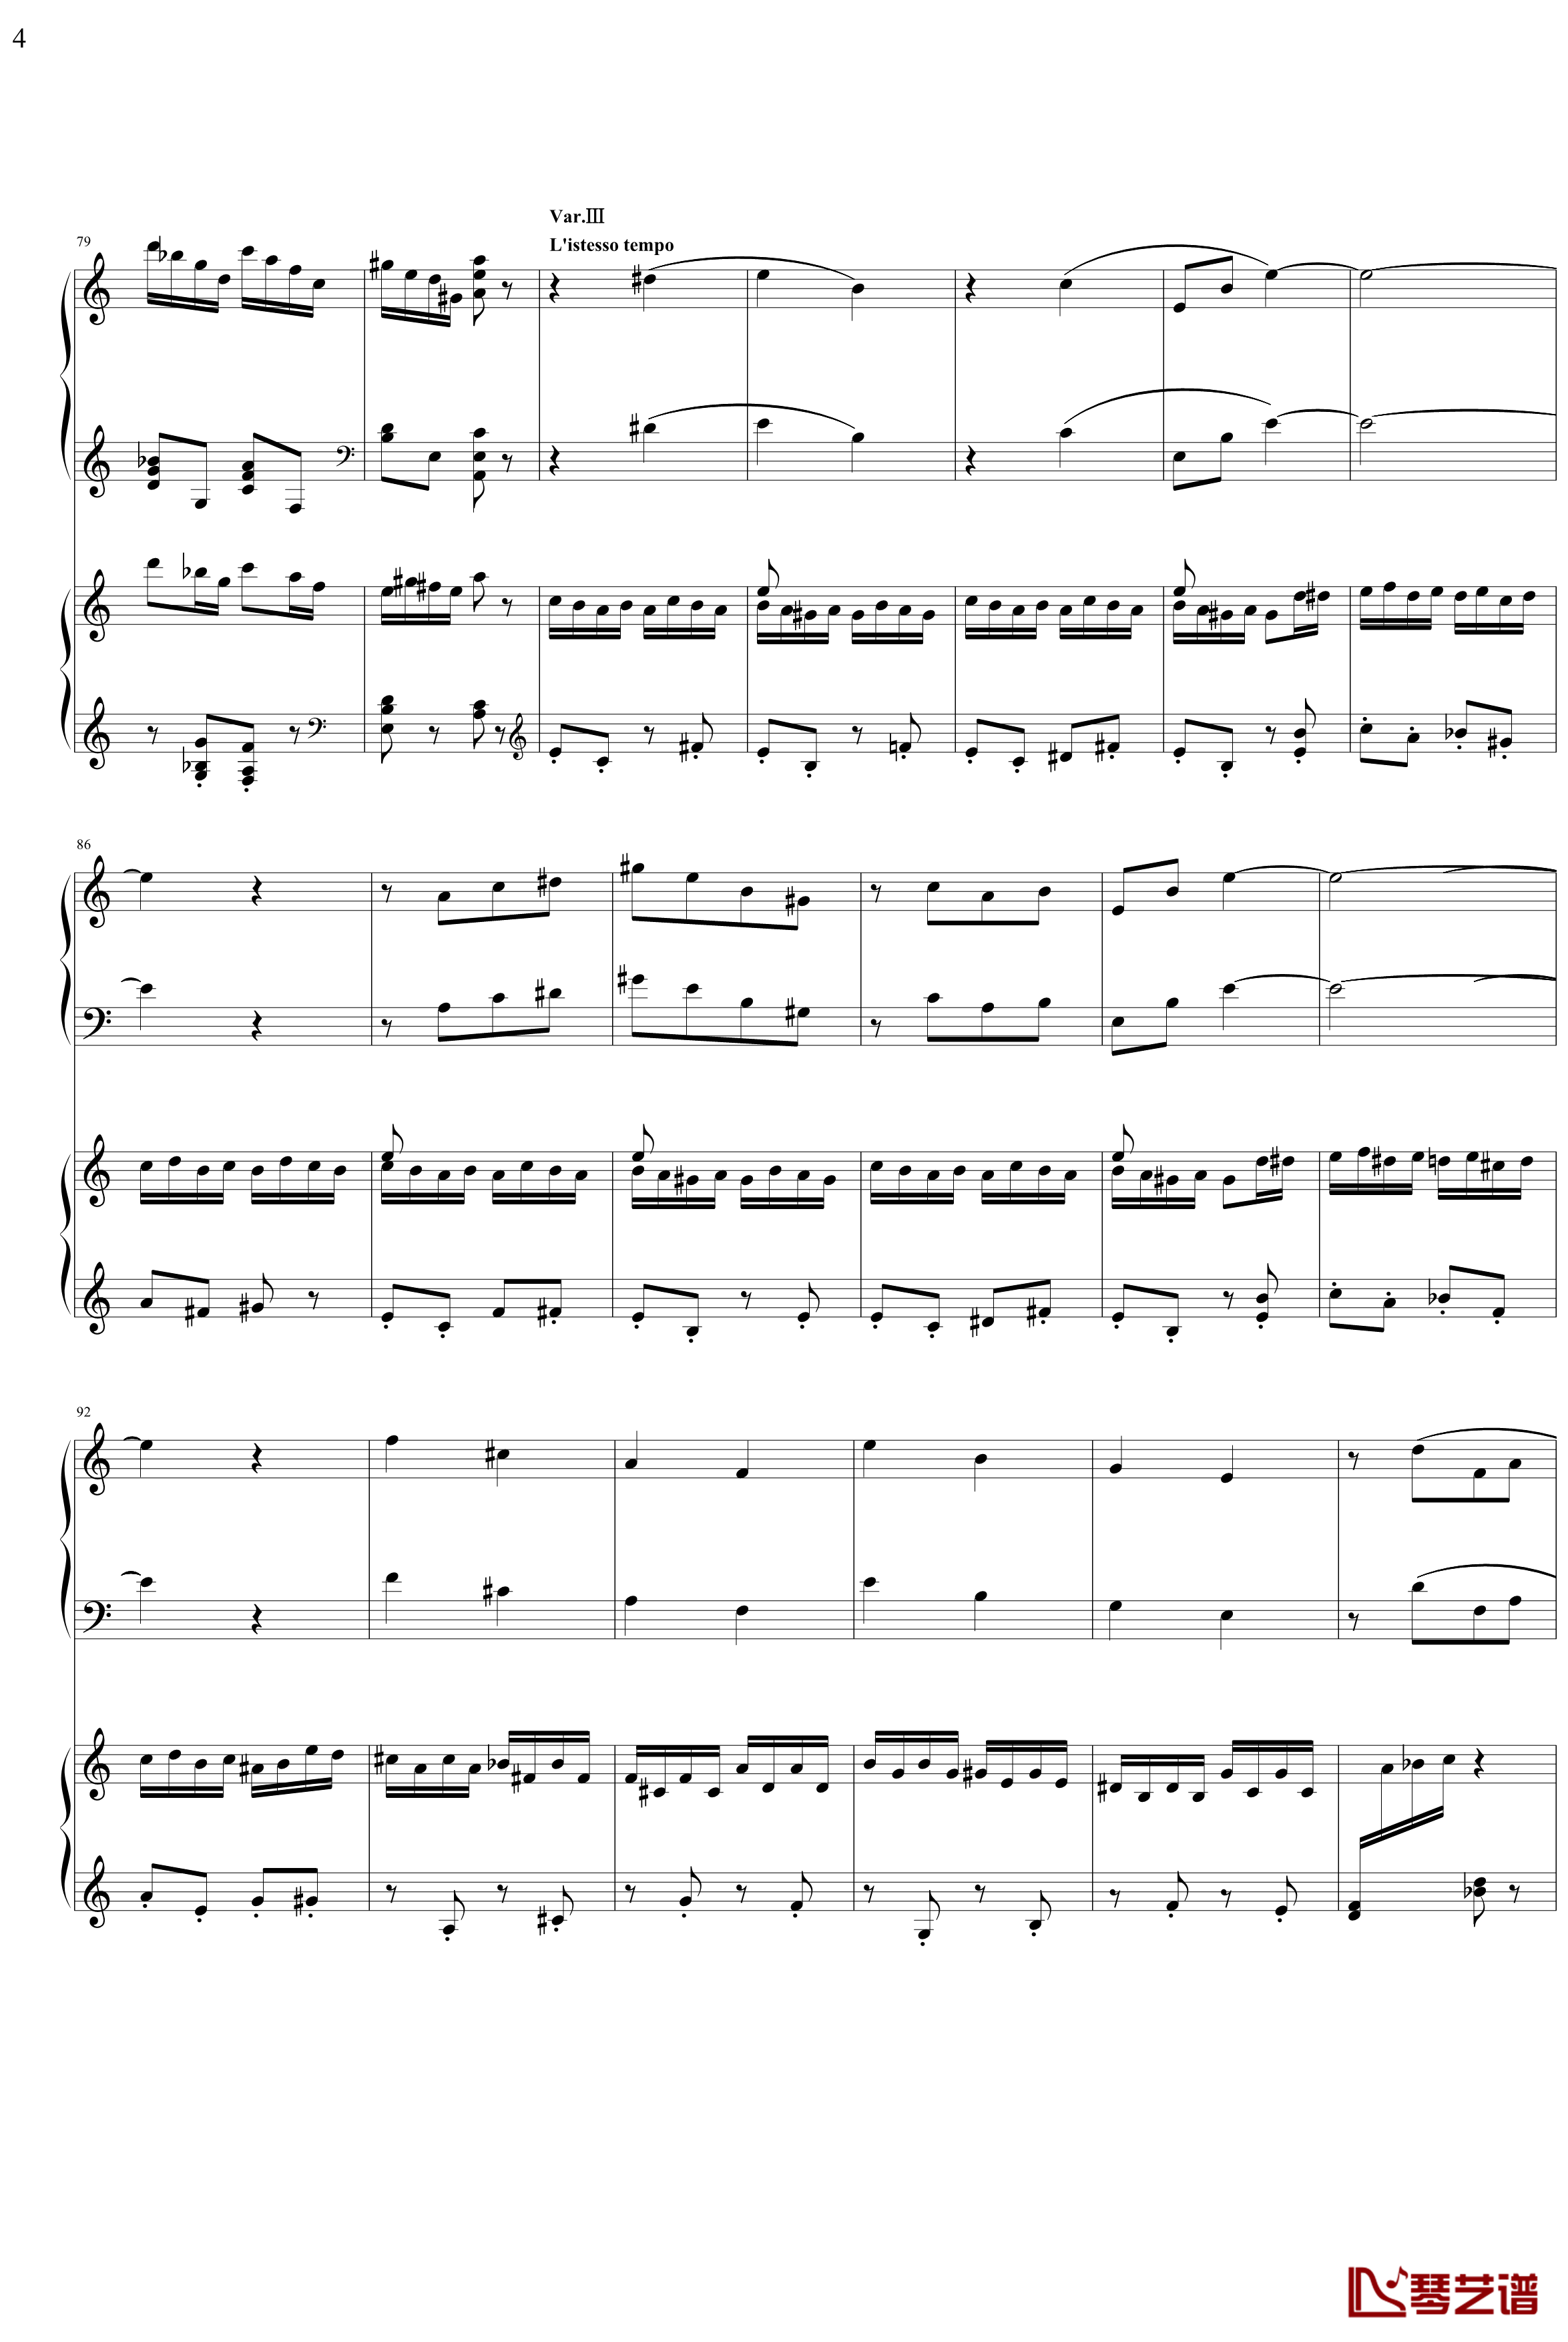 帕格尼主题狂想曲钢琴谱-1~10变奏-拉赫马尼若夫4